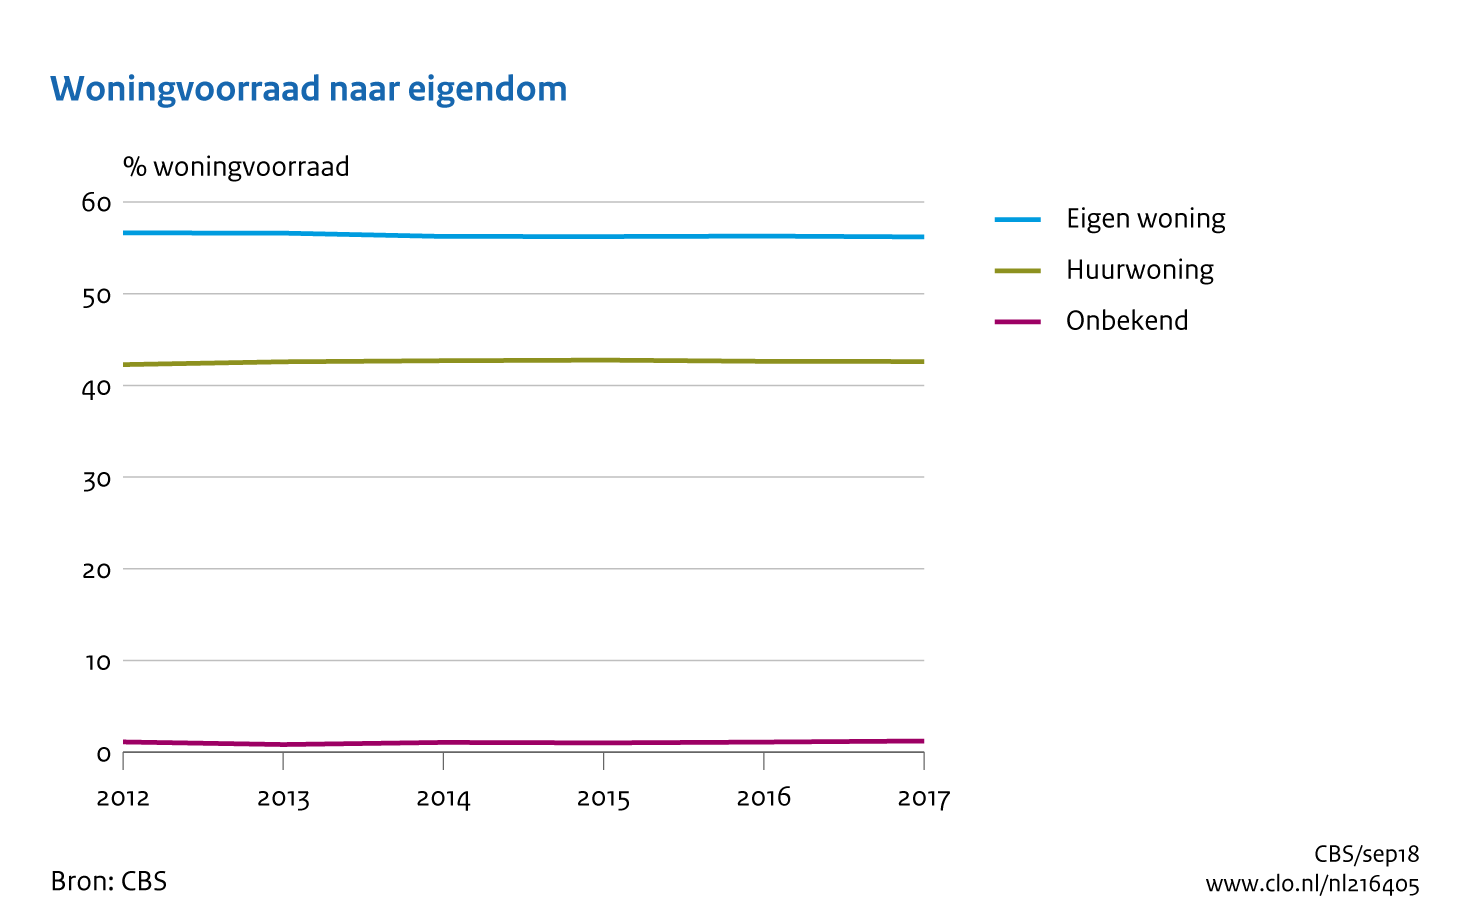 Figuur Woningvoorraad naar eigendom, 2006-2017. In de rest van de tekst wordt deze figuur uitgebreider uitgelegd.